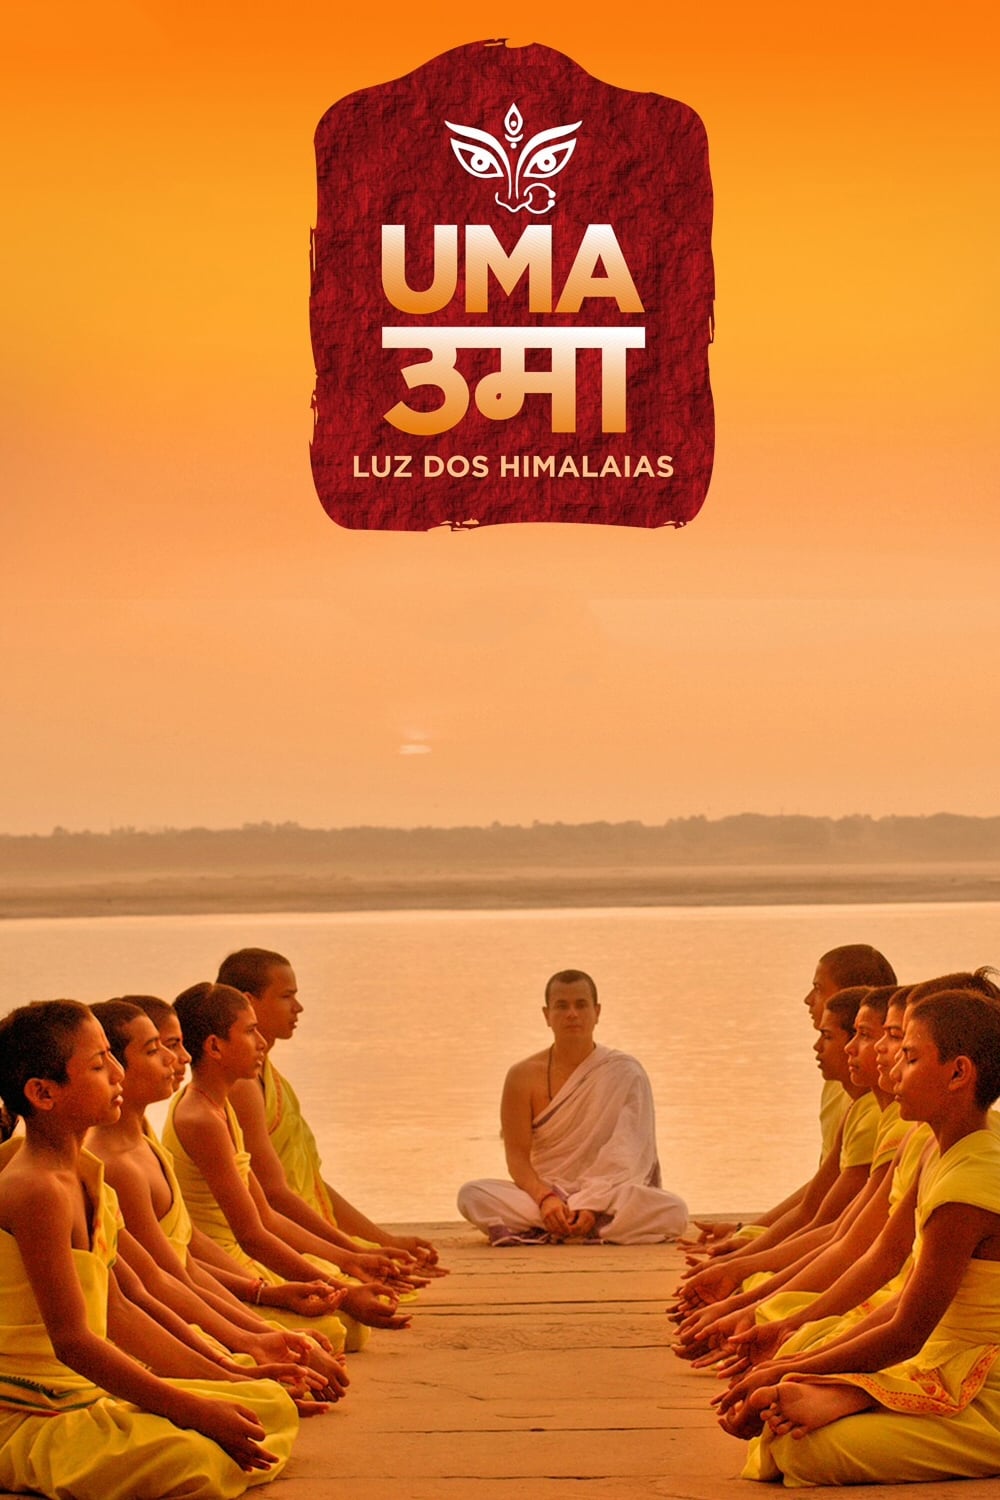 UMA 'Light of Himalaya'